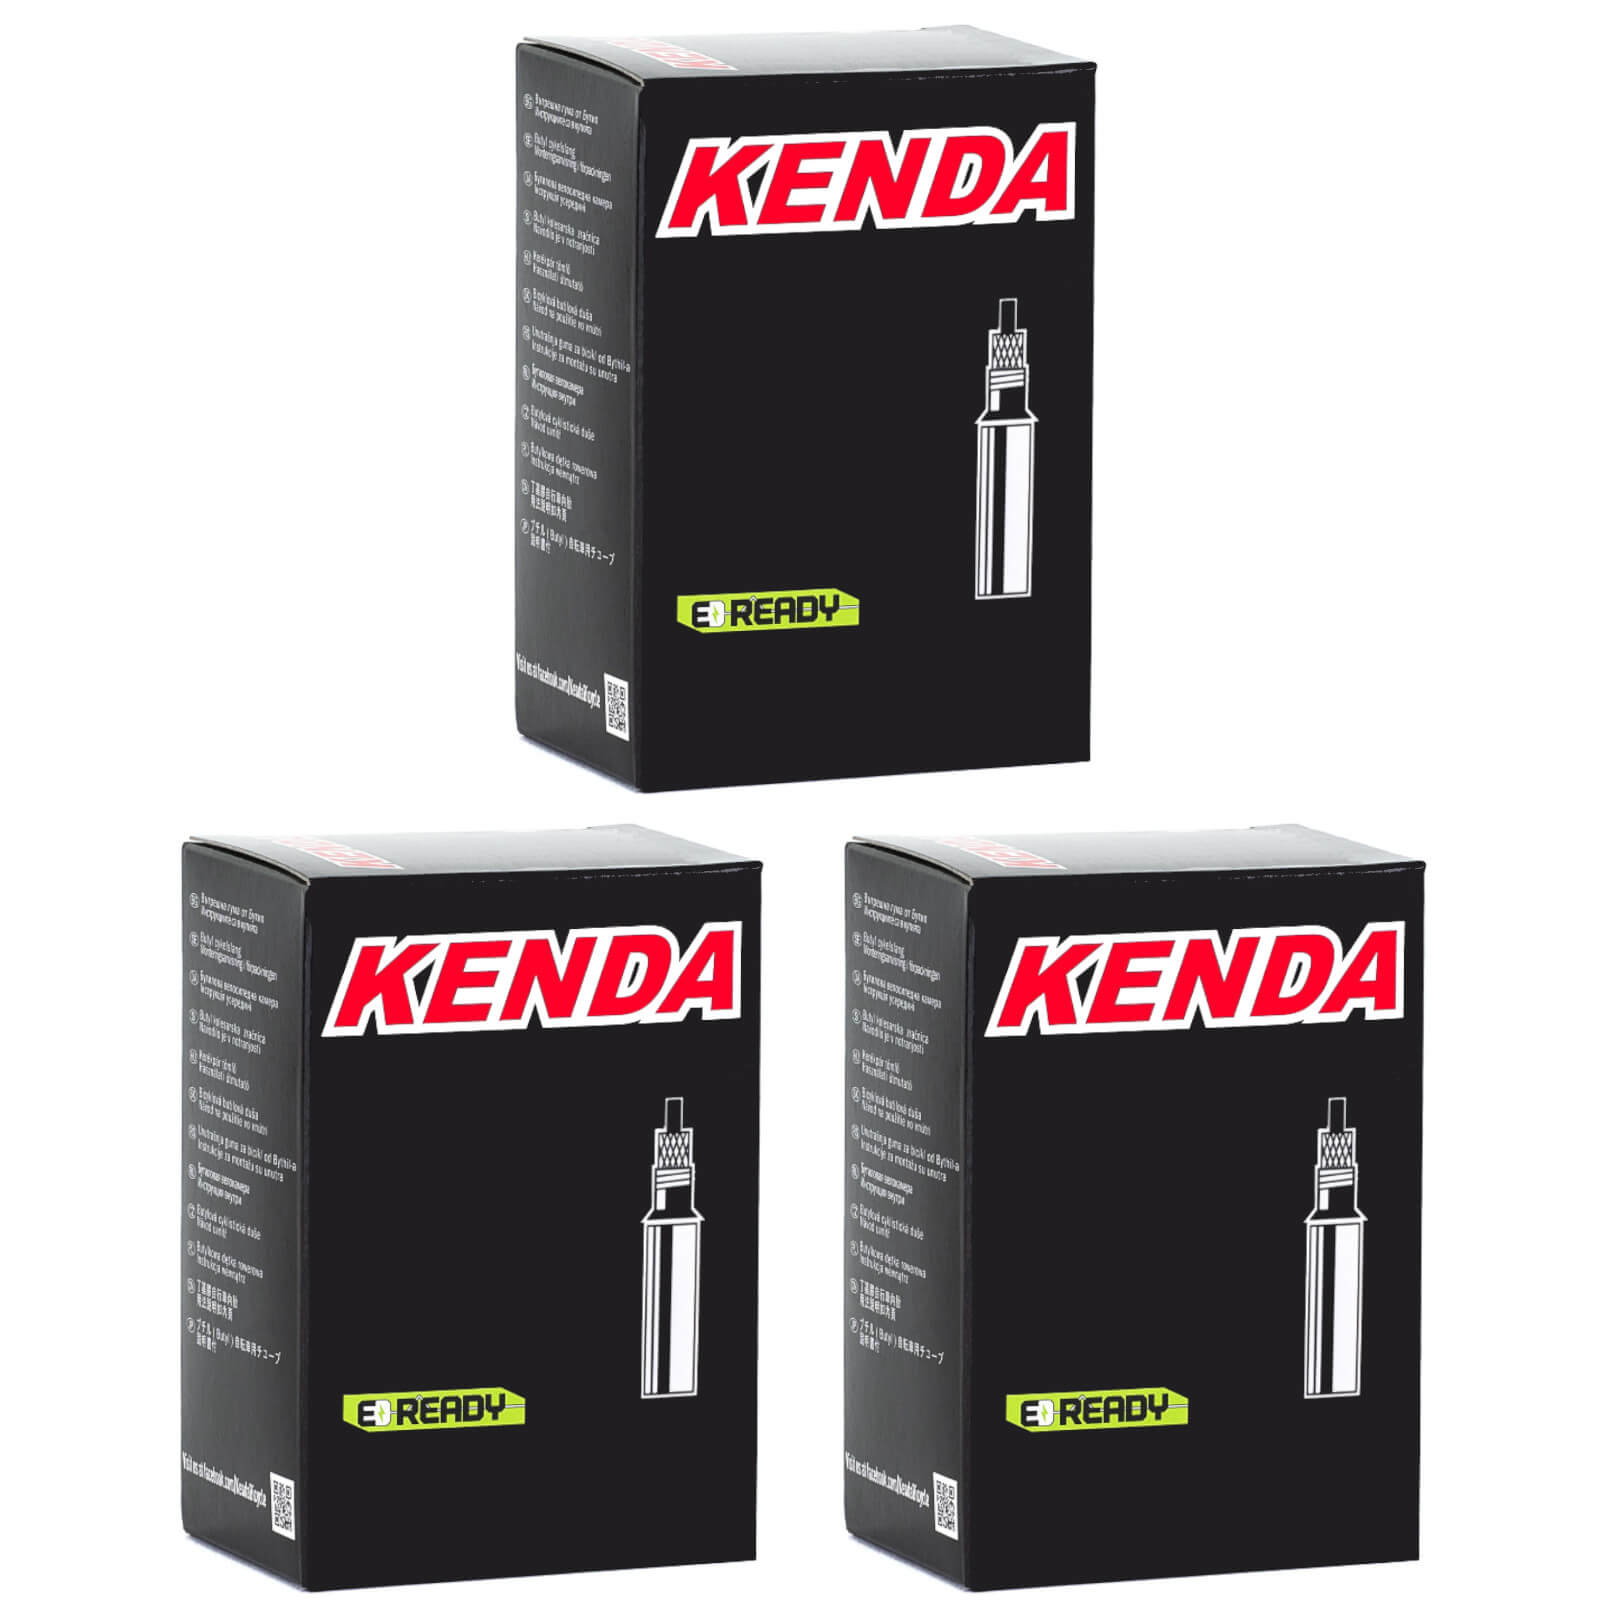 Kenda 700x20-28c Removable Core SL 80mm 700c Presta Valve Bike Inner Tube Pack of 3